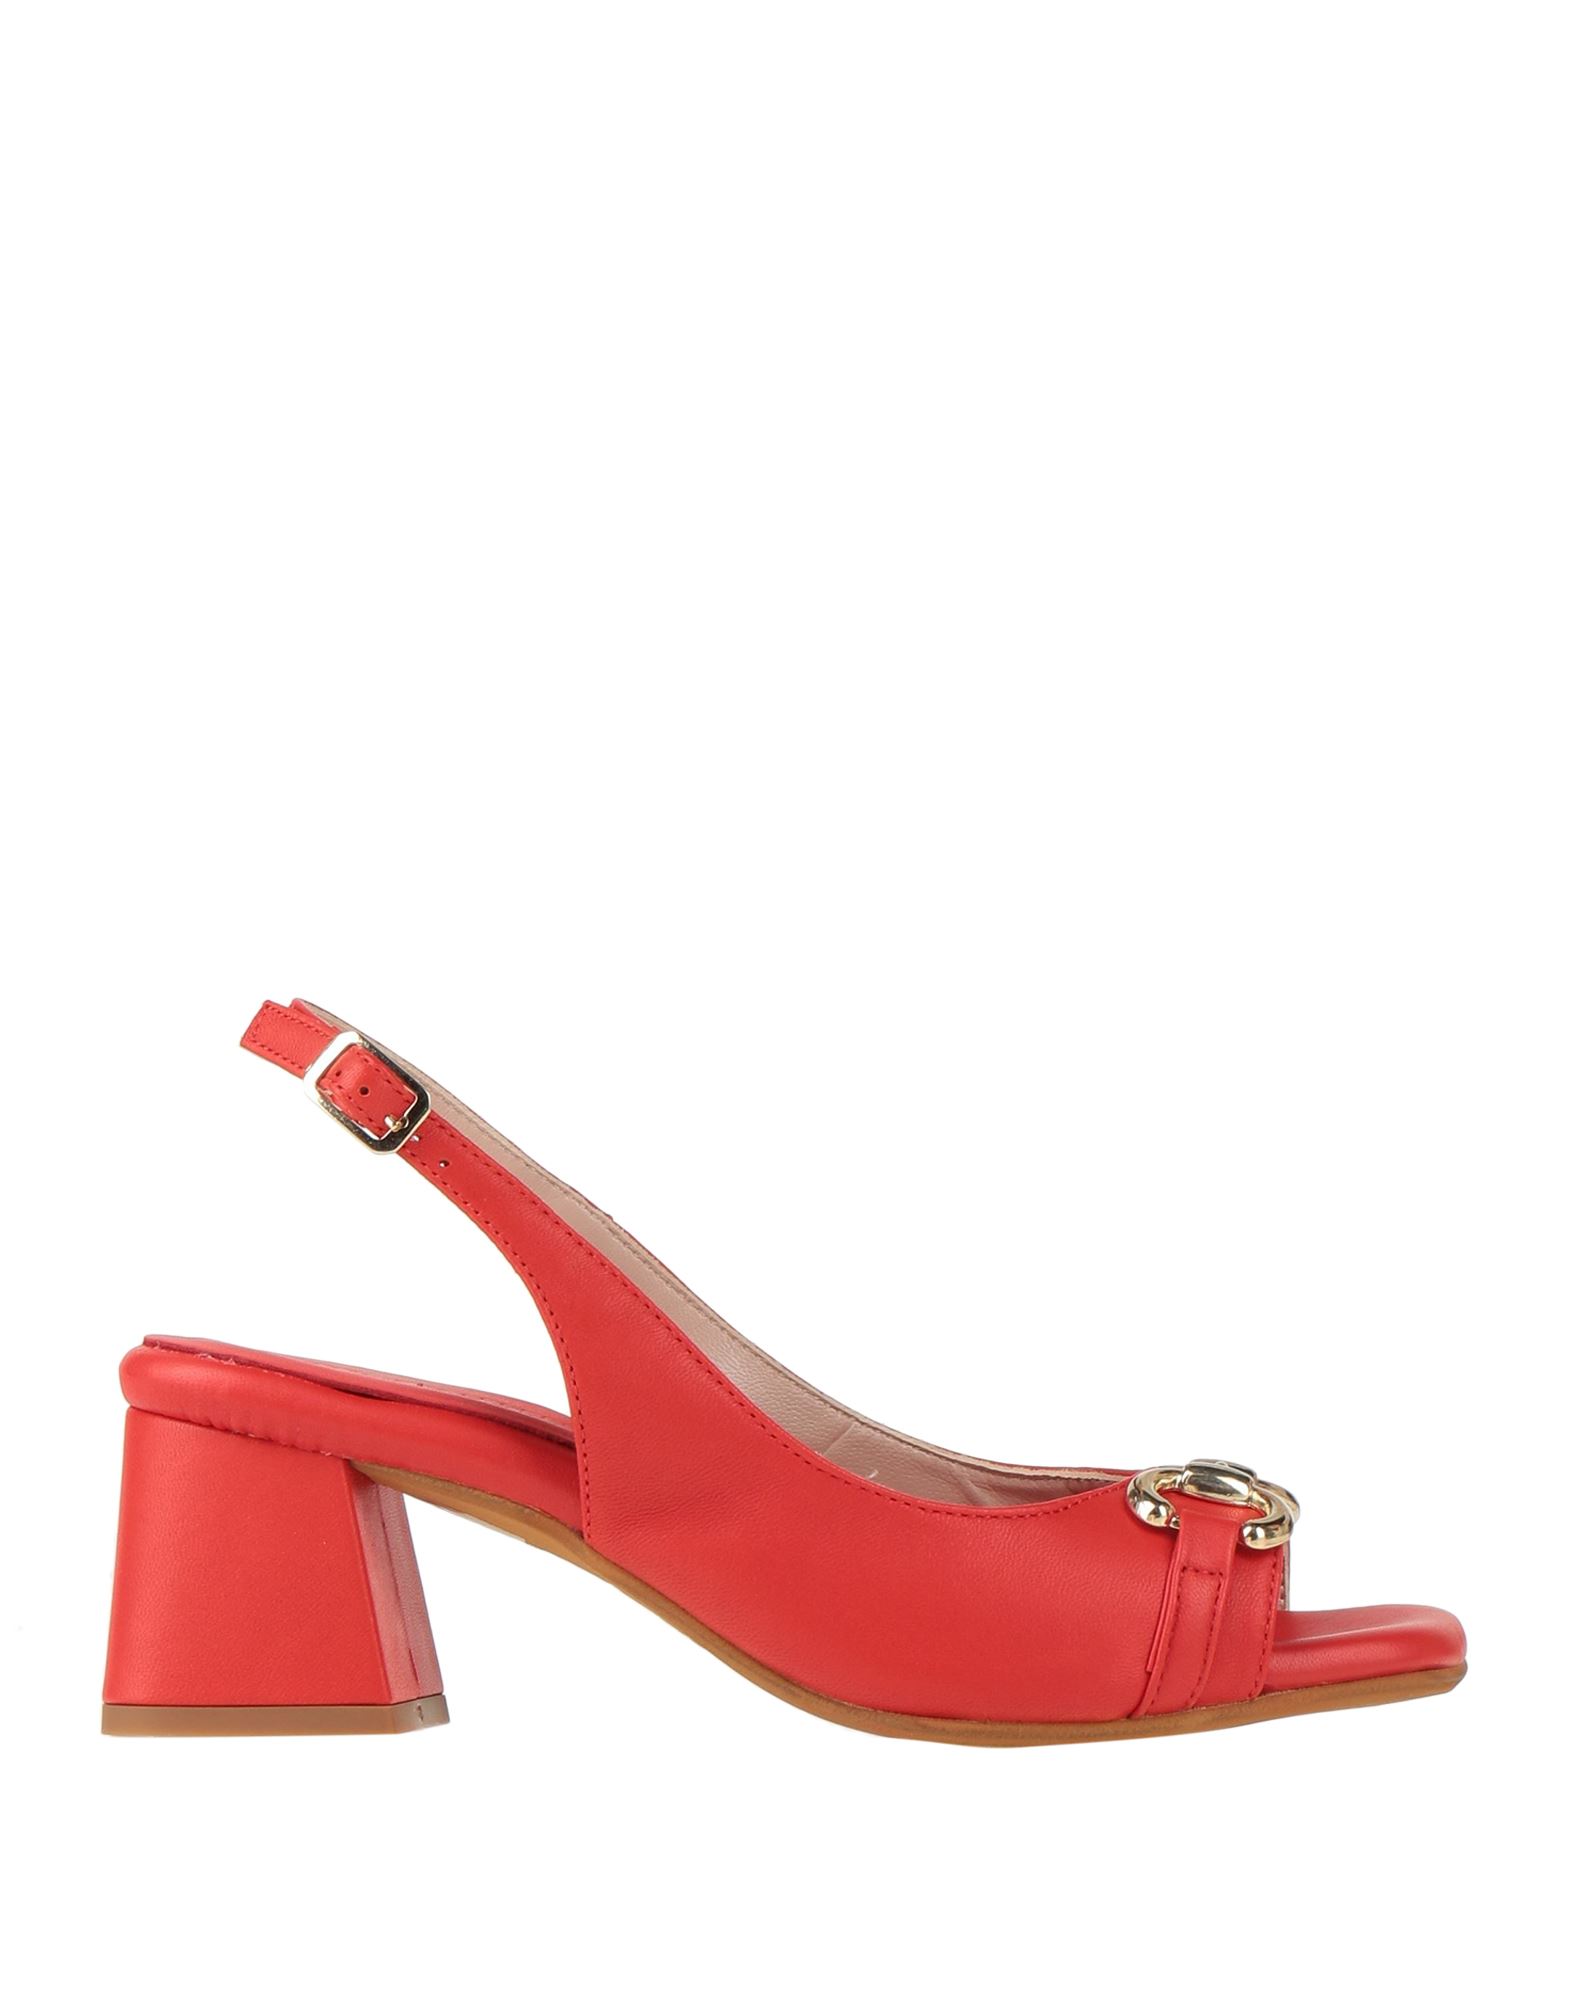 Loretta Pettinari Sandals In Red